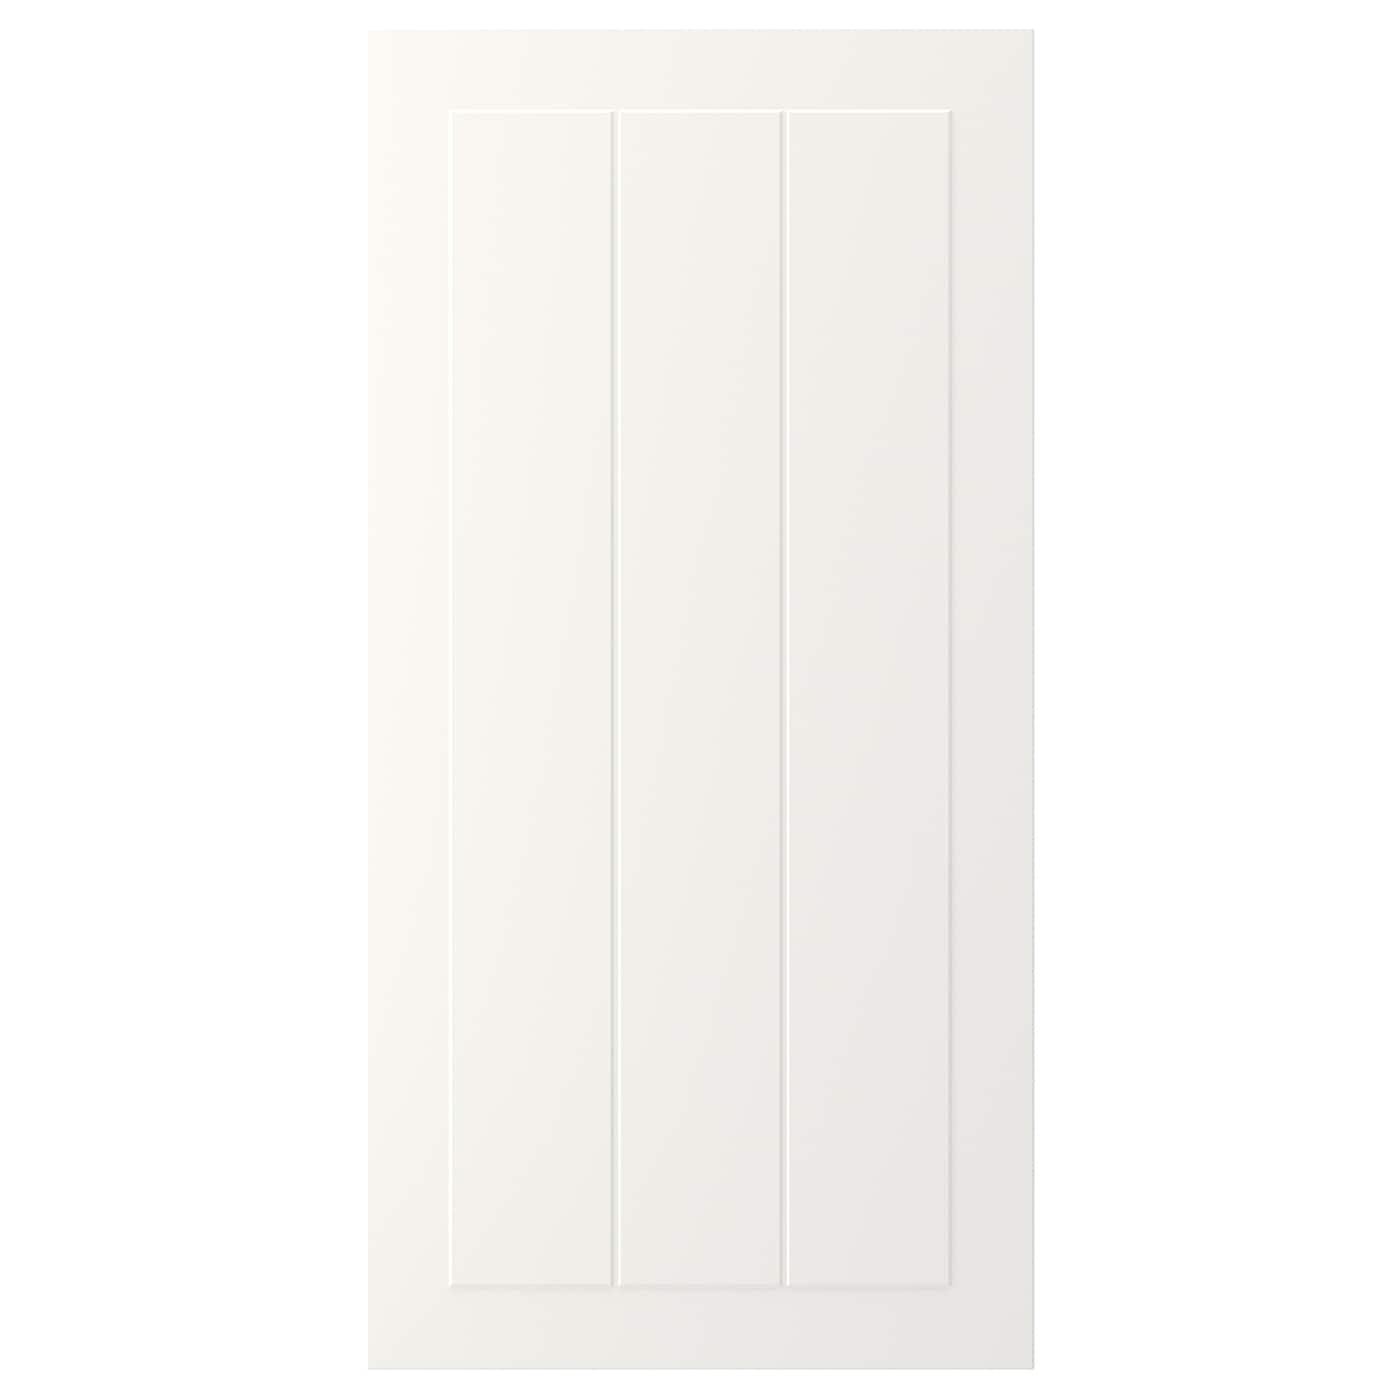 Дверца - IKEA STENSUND, 80х40 см, белый, СТЕНСУНД ИКЕА